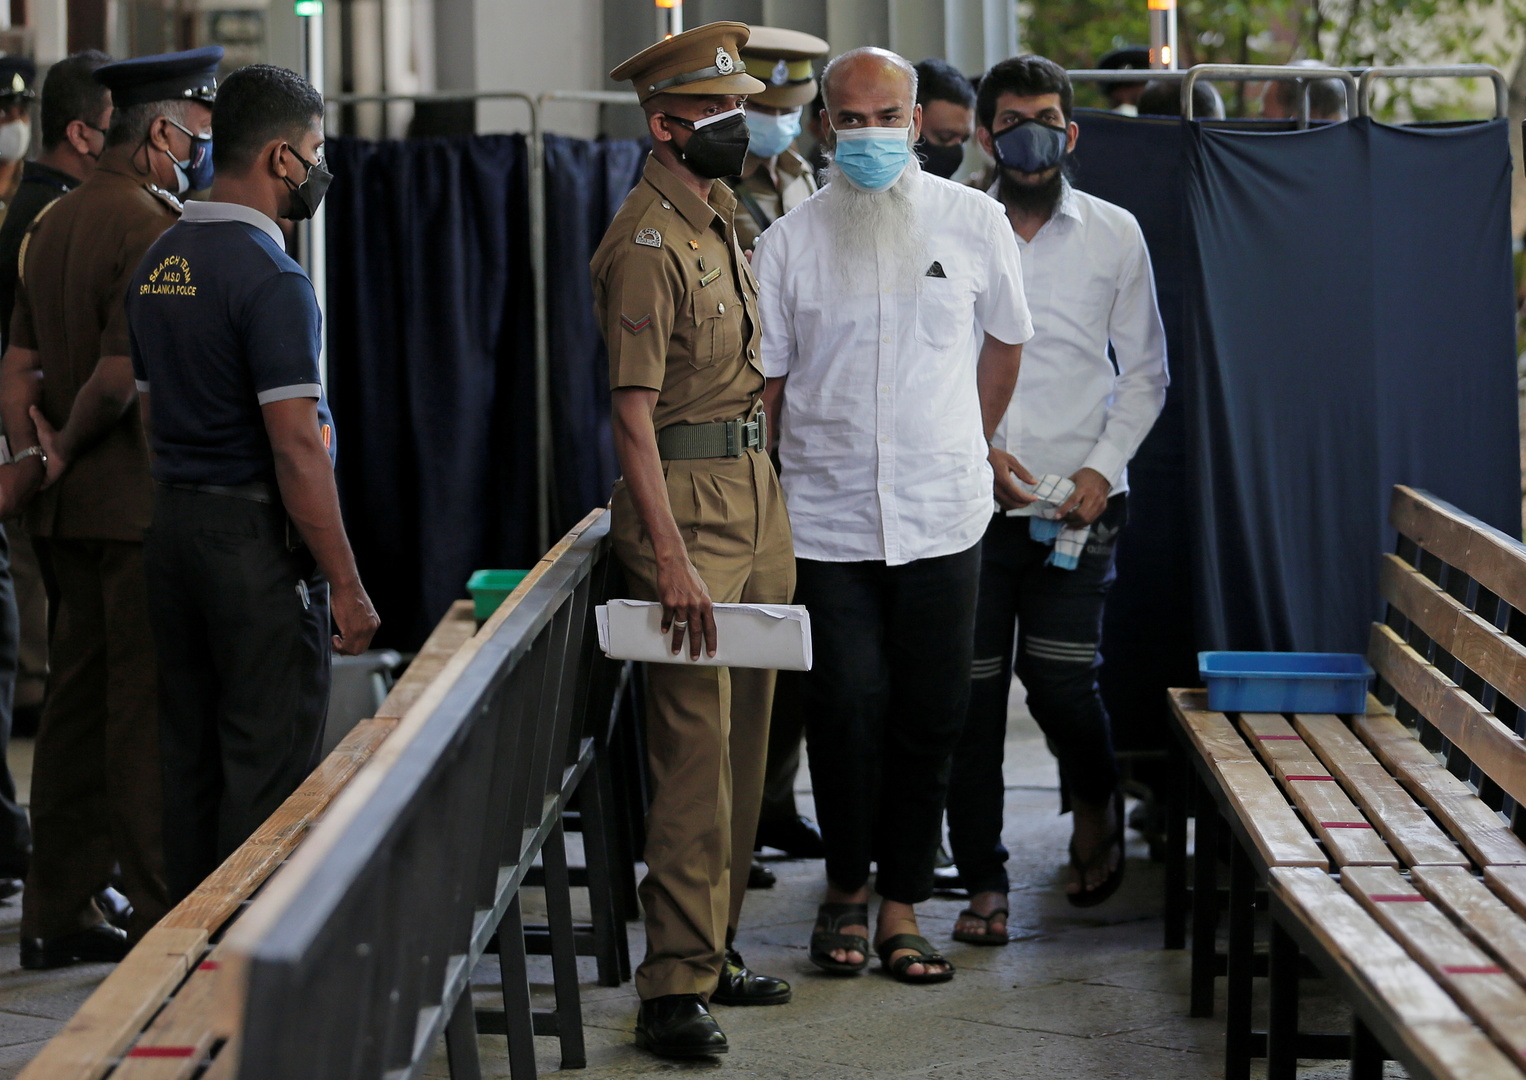 سريلانكا.. بدء محاكمة 25 متهما على خلفية تفجيرات عيد الفصح